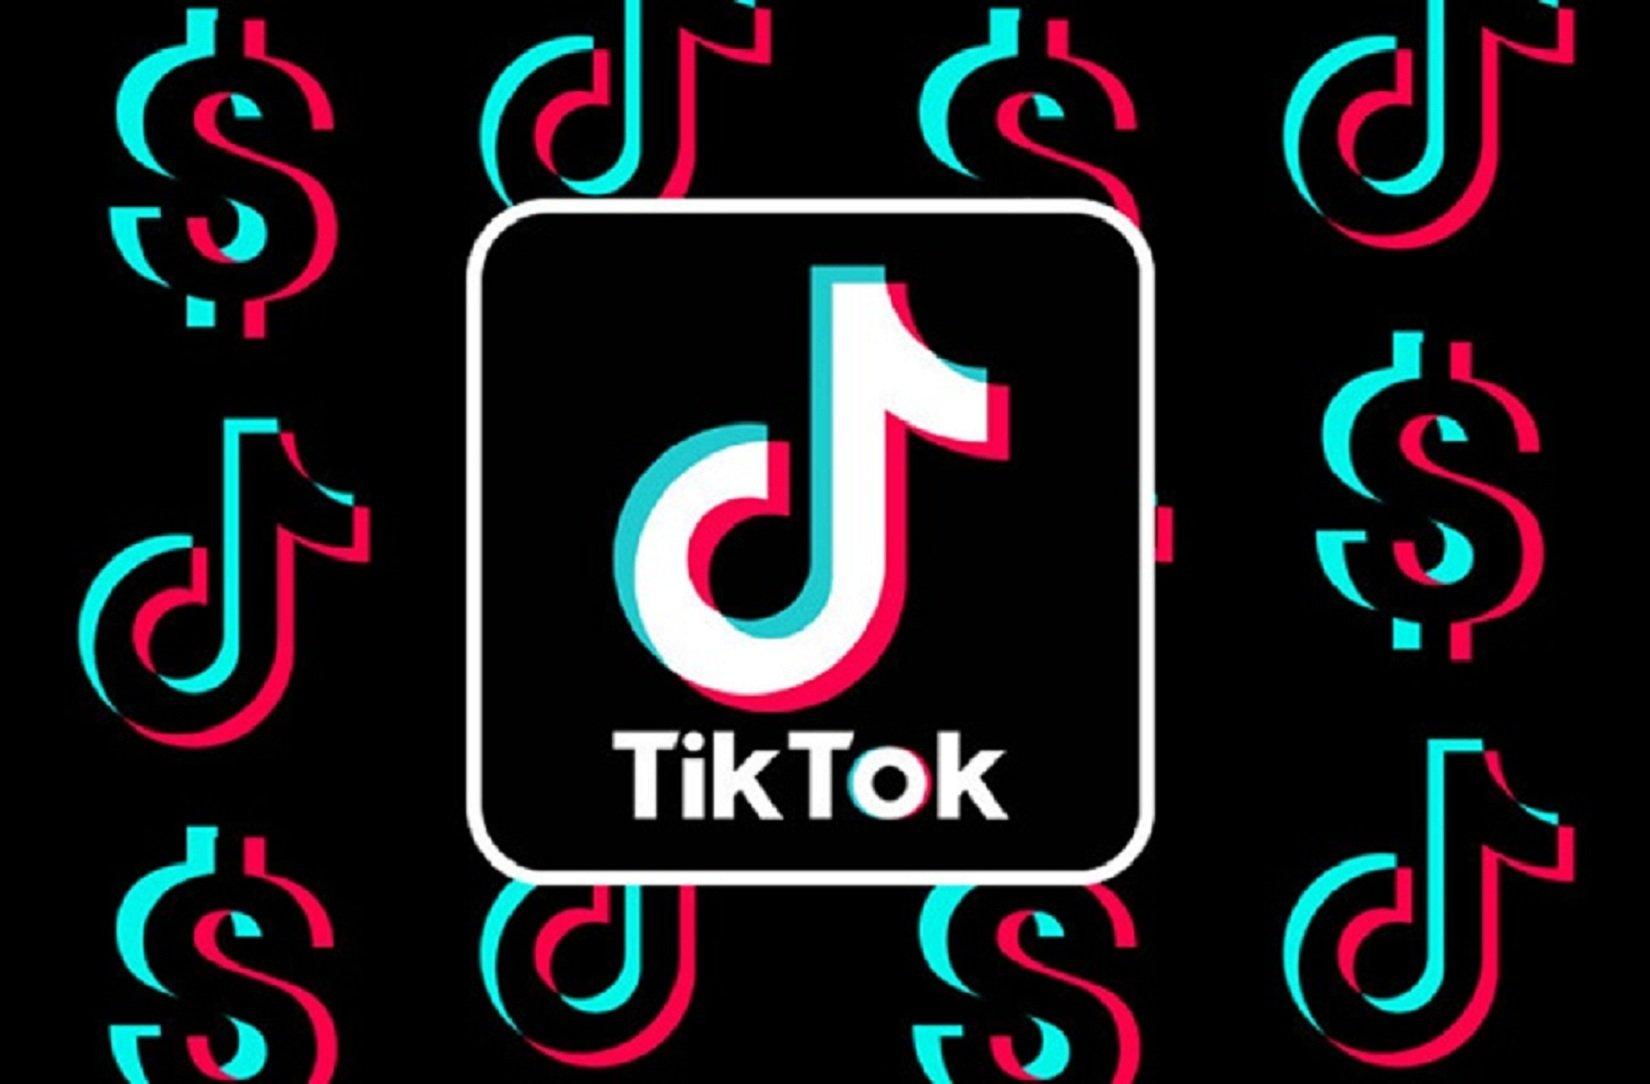 TikTok nhạc: Bạn yêu thích những giai điệu sôi động và lôi cuốn? Hãy đến với TikTok nhạc để thưởng thức những video ngắn vô cùng sáng tạo và chất lượng. Đây sẽ là nơi giúp bạn thăng hoa cùng những điệu nhạc hot nhất hiện nay. Nhanh chân khám phá thế giới âm nhạc trên TikTok nhé!